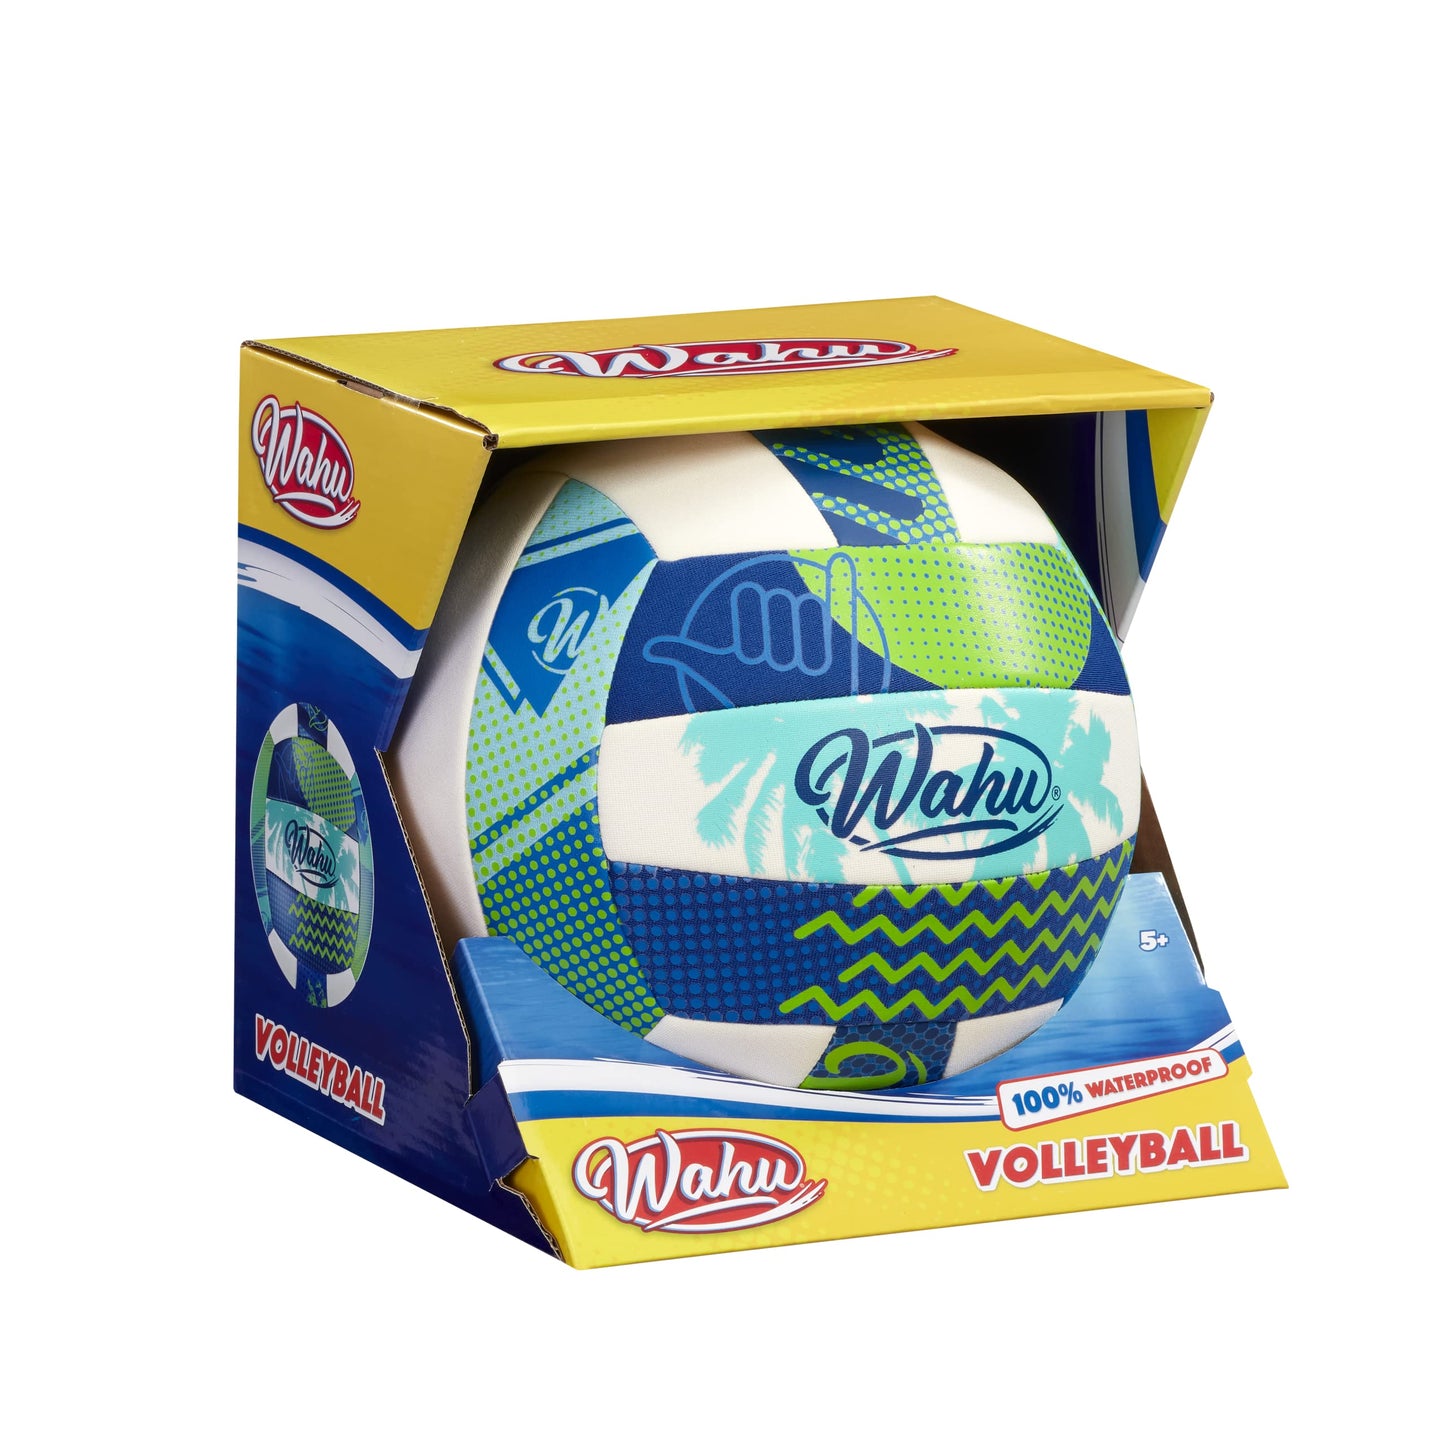 WAHU Volleyball Vert - Matériau en néoprène souple 100% imperméable pour jouer dans et hors de l'eau - Taille réglementaire 5,Green